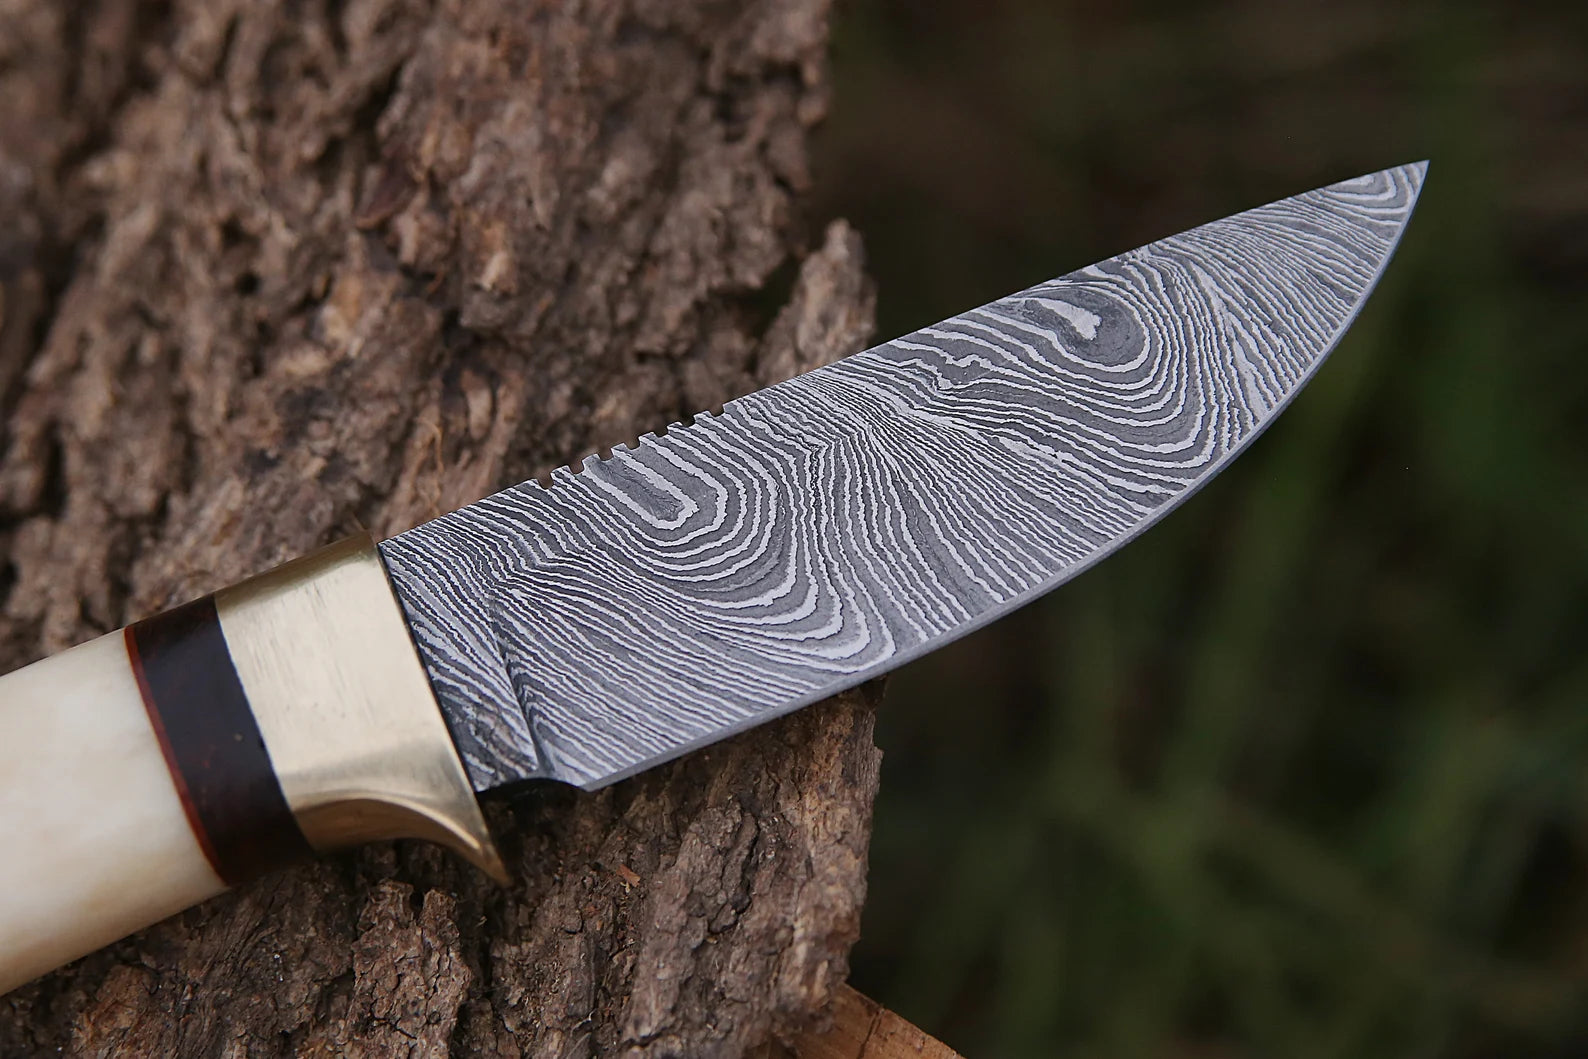 Skinner Knife - Damascus Steel – Bone Handle